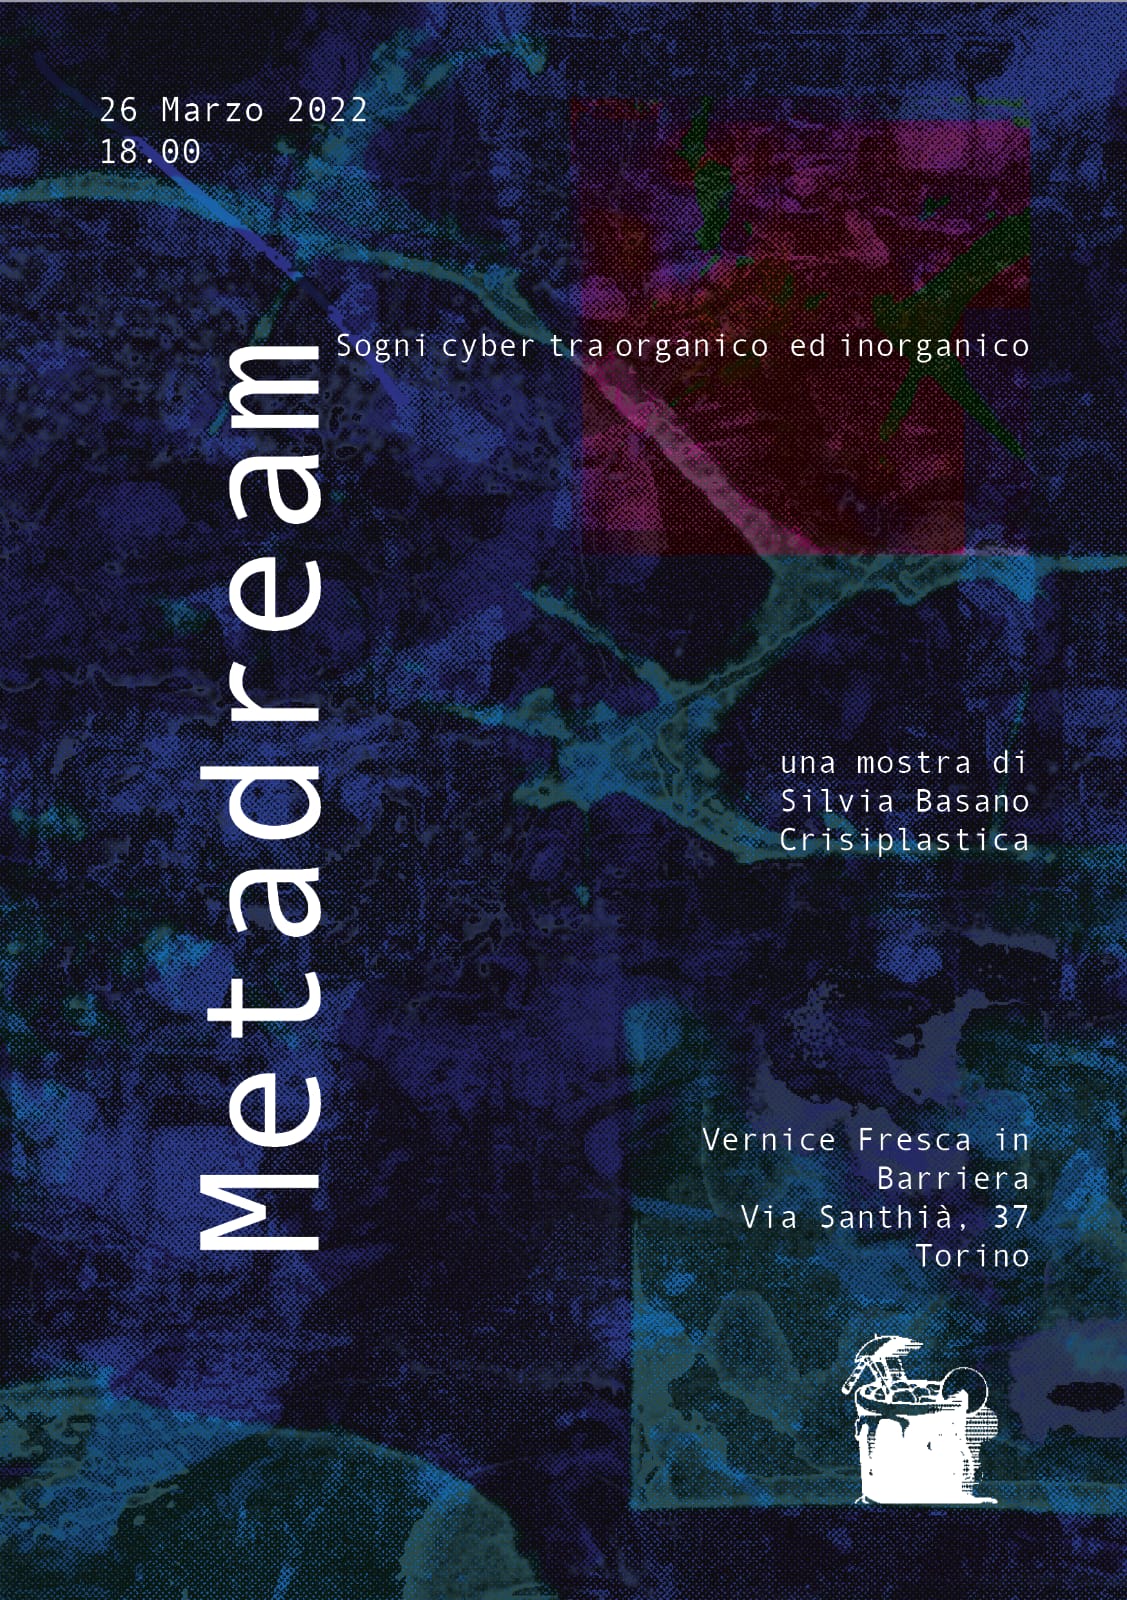 Inaugurazione mostra "Metadream" di Silvia Basano e Crisiplastica